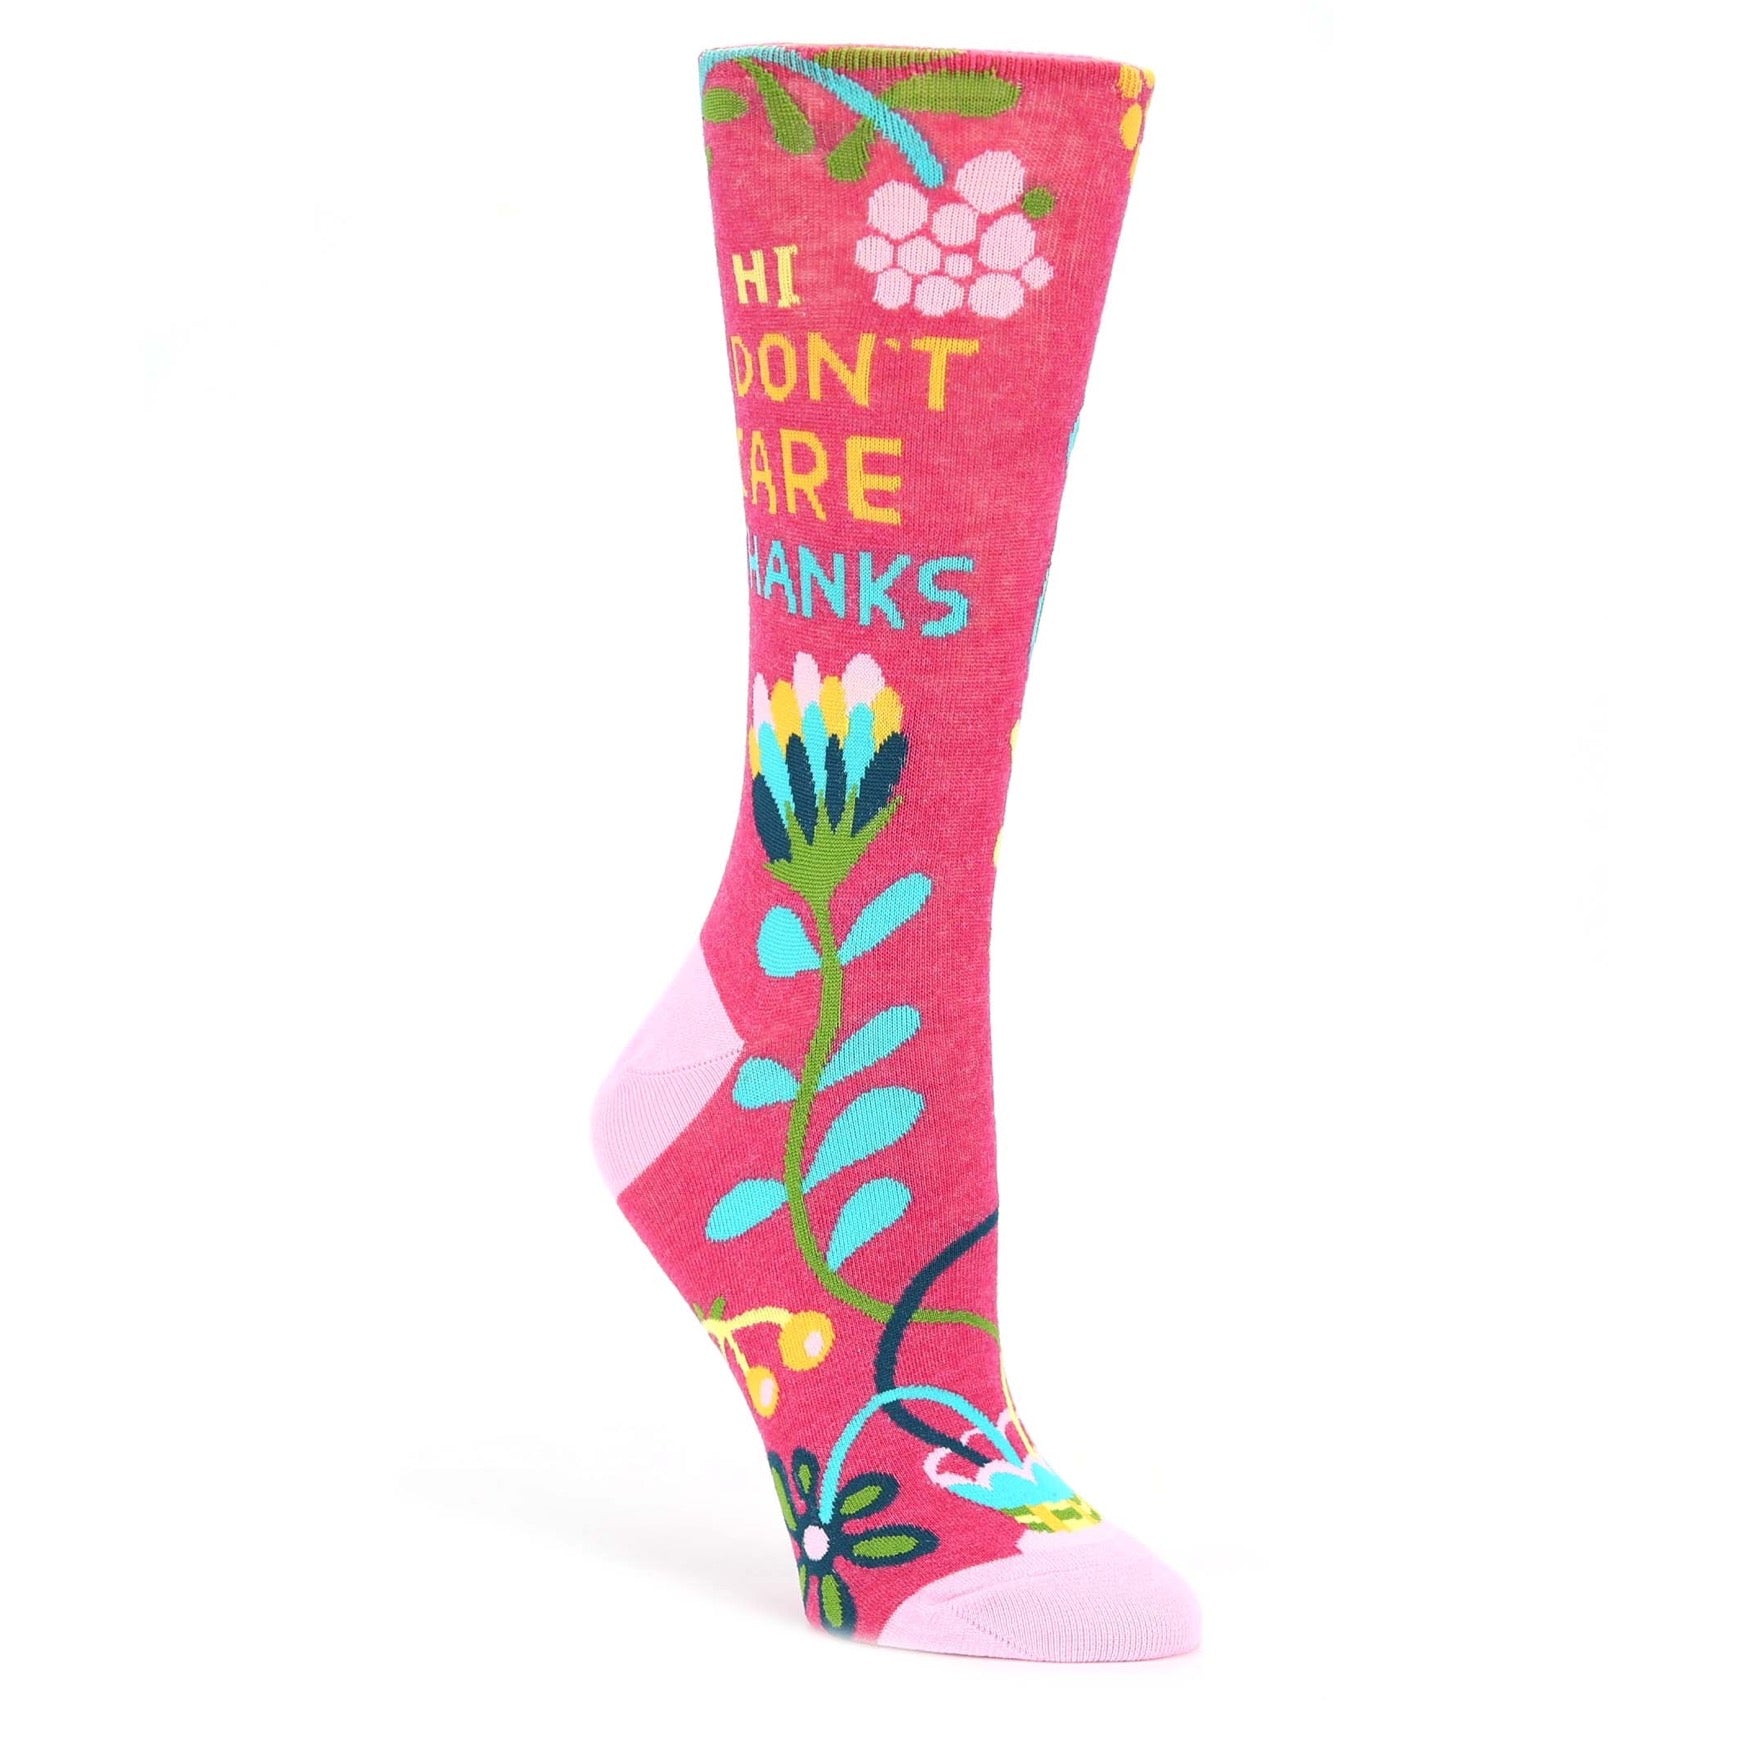 I Don't Care Socks - Novelty Dress Socks for Women